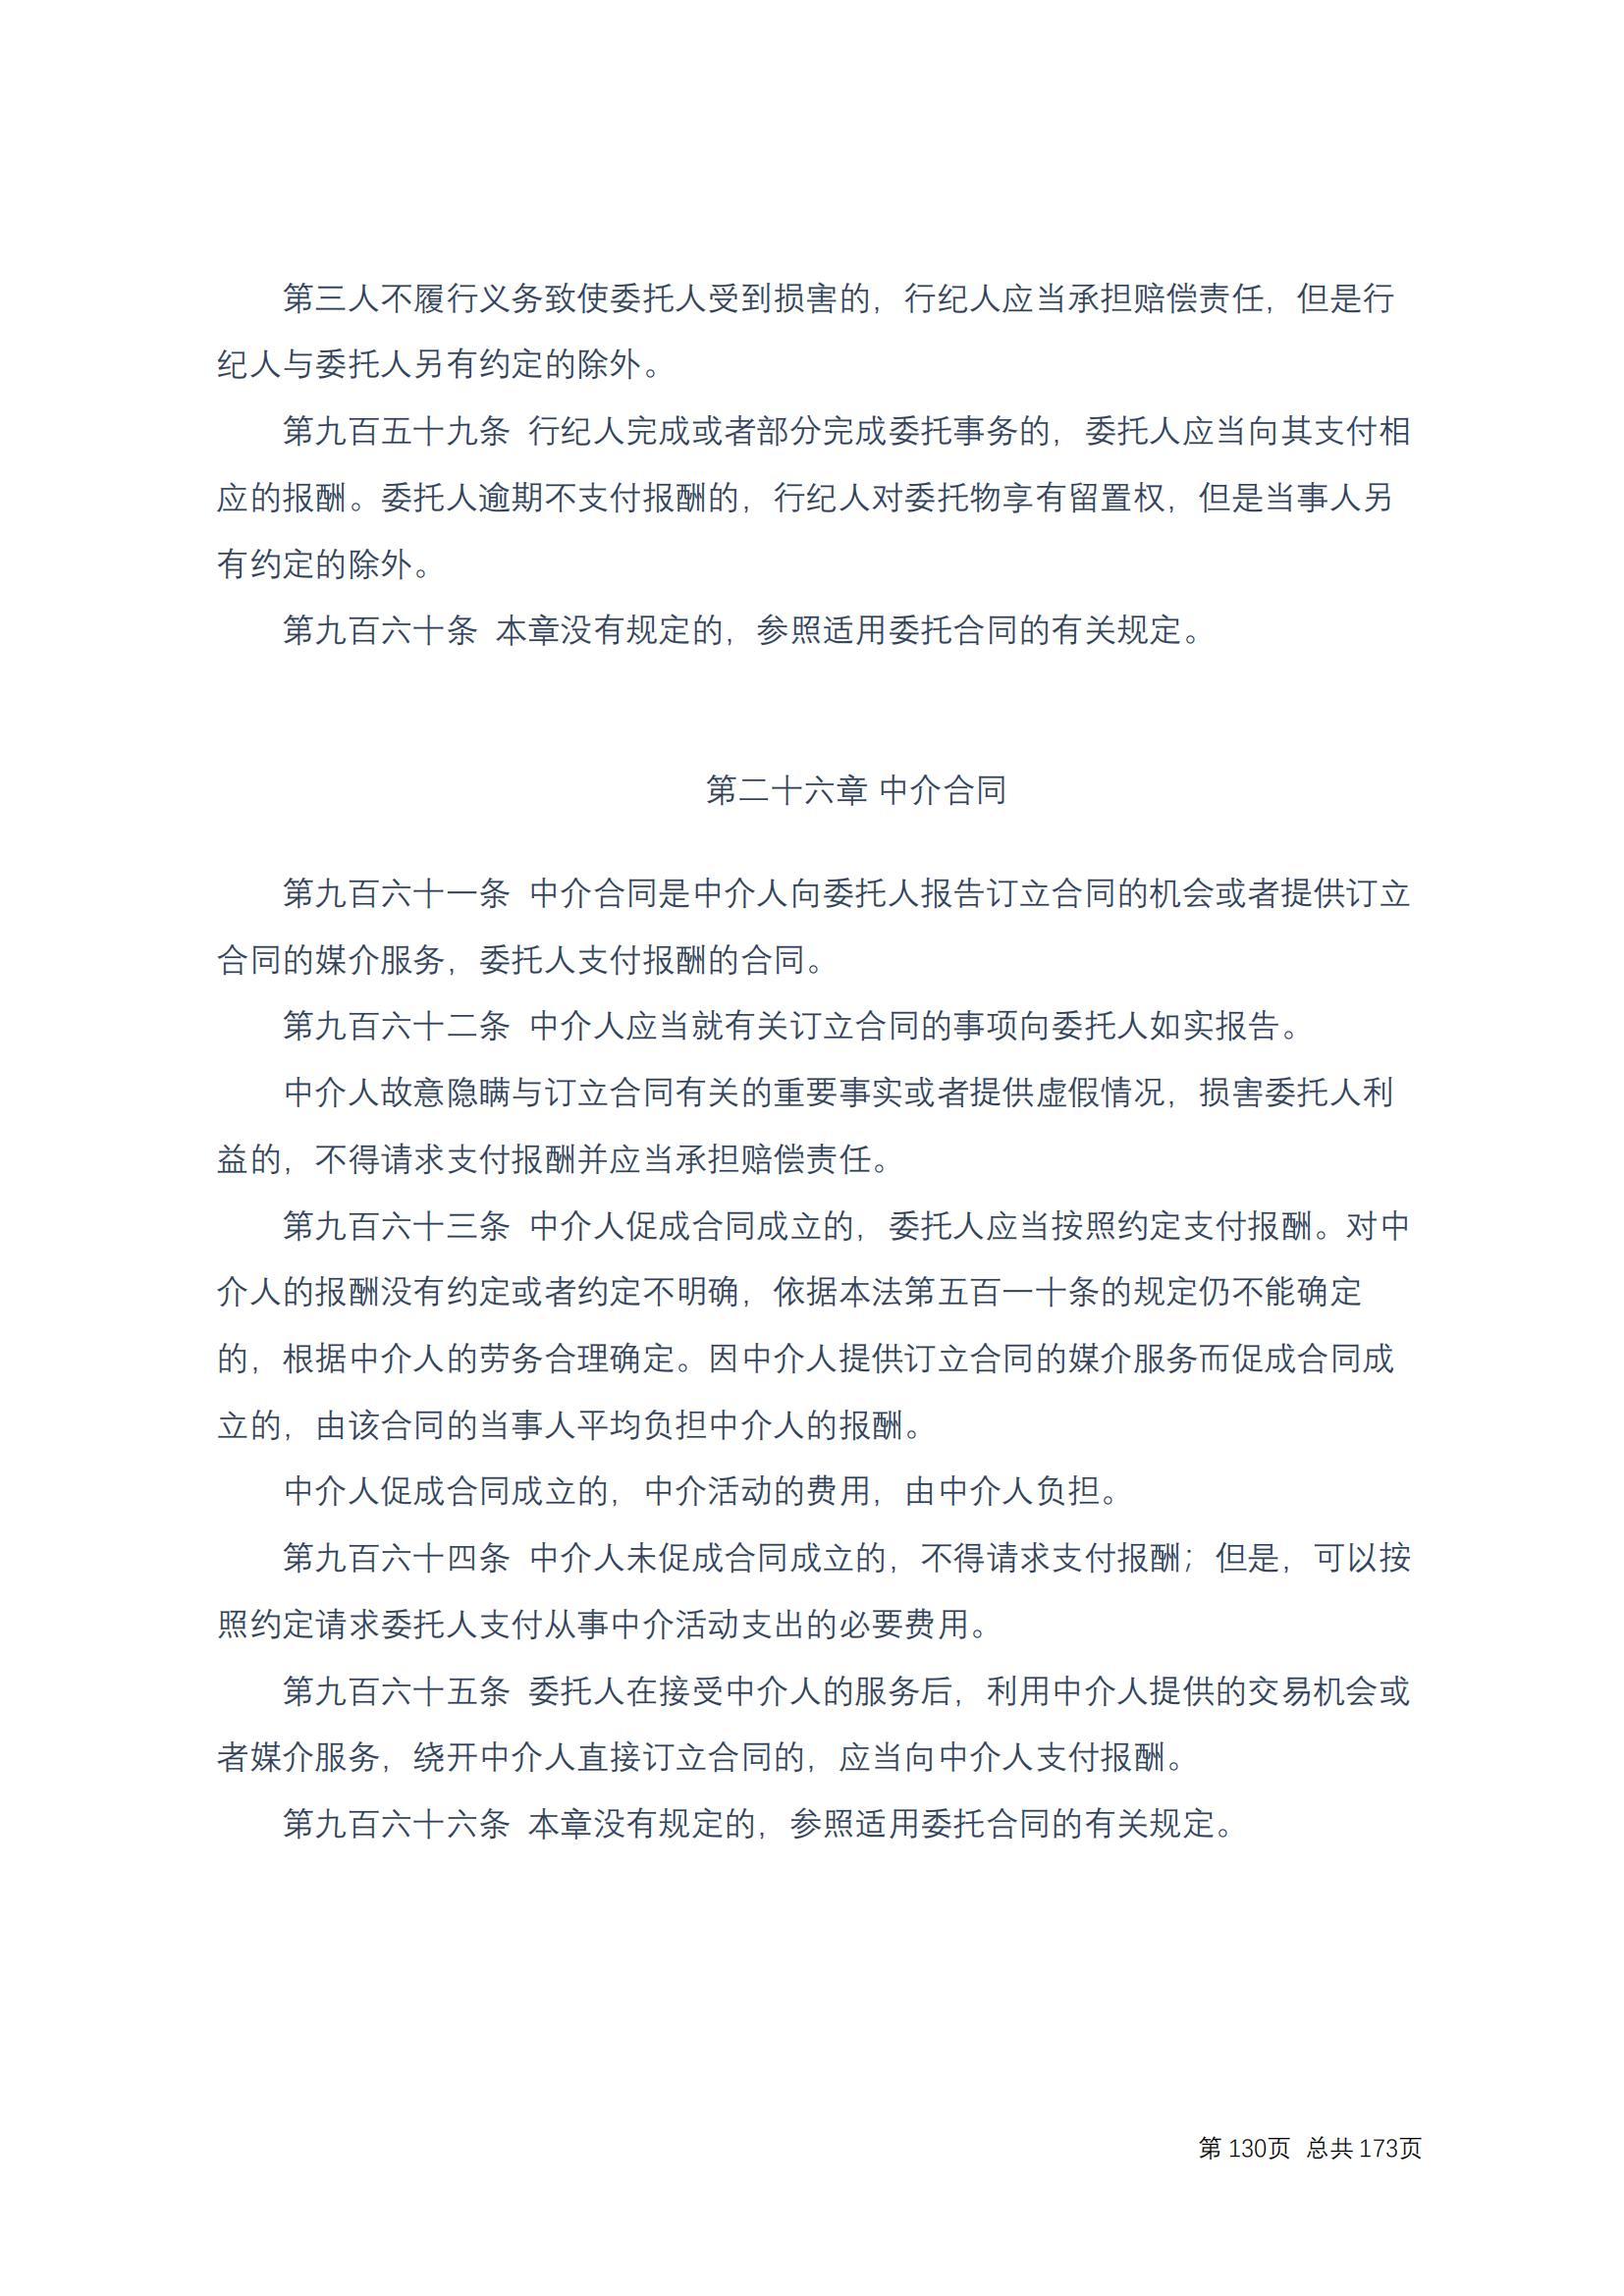 中华人民共和国民法典 修改过_129